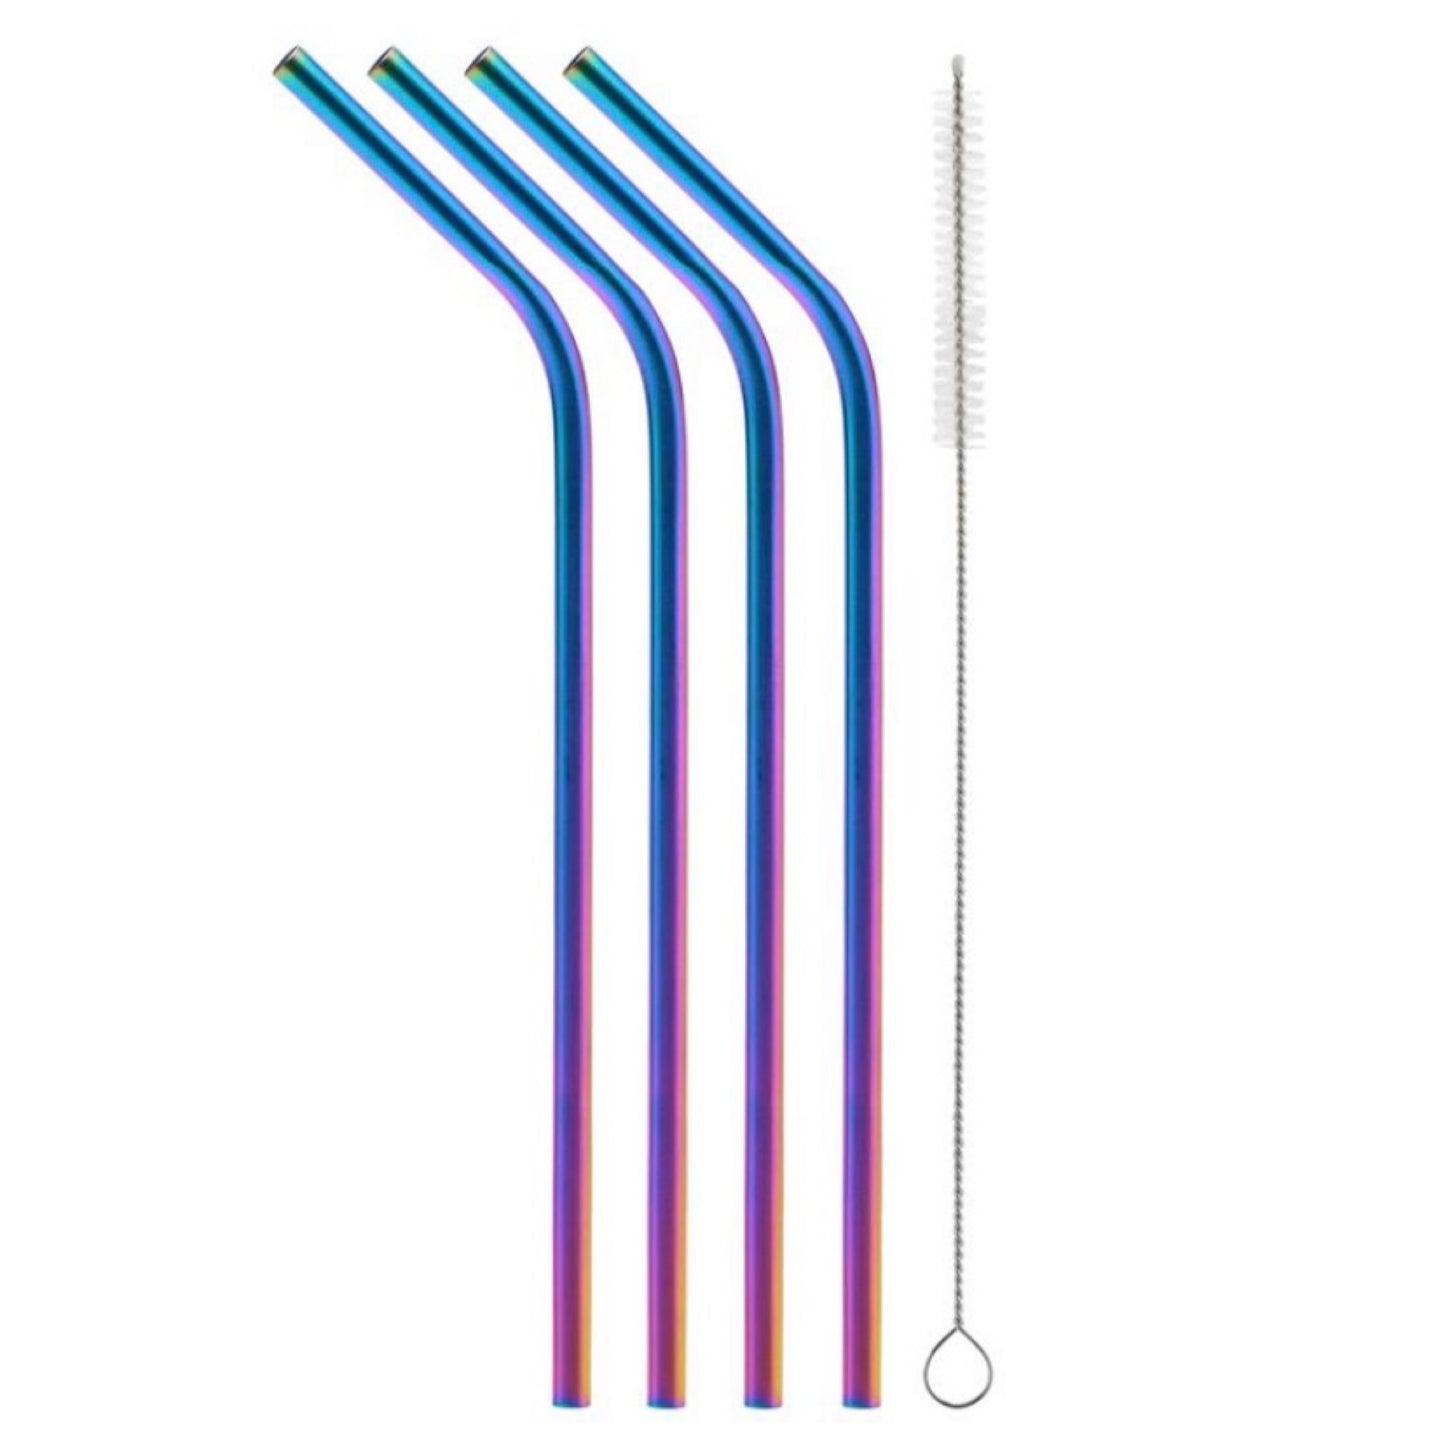 Bent Rainbow Metallic Straw-8.5” 4 Pack Plus Cleaning Brush